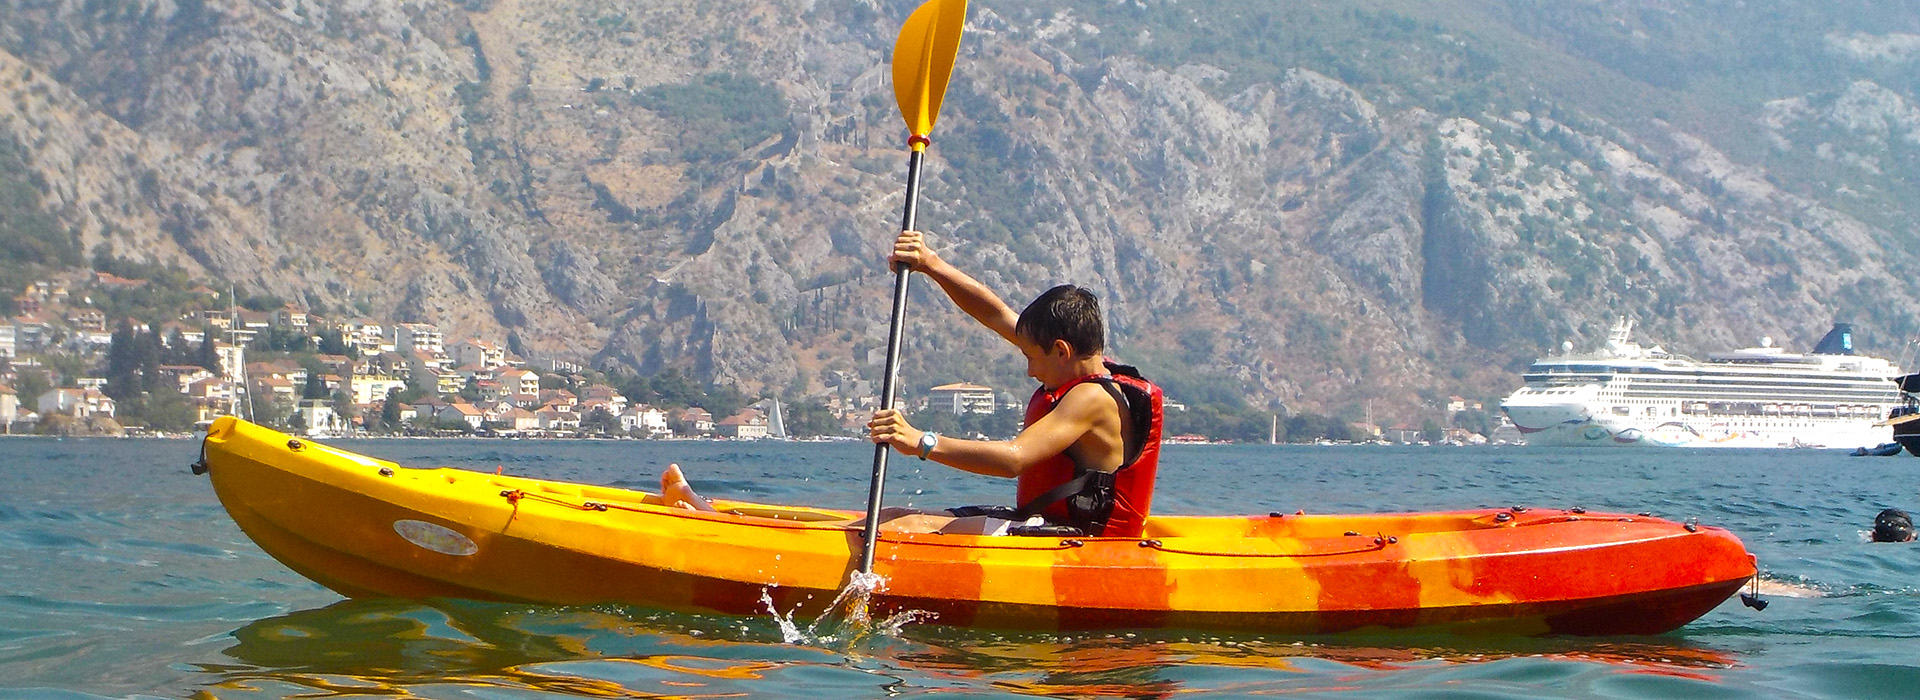 Luxury Family Holiday in Montenegro - Kotor bay kayaking